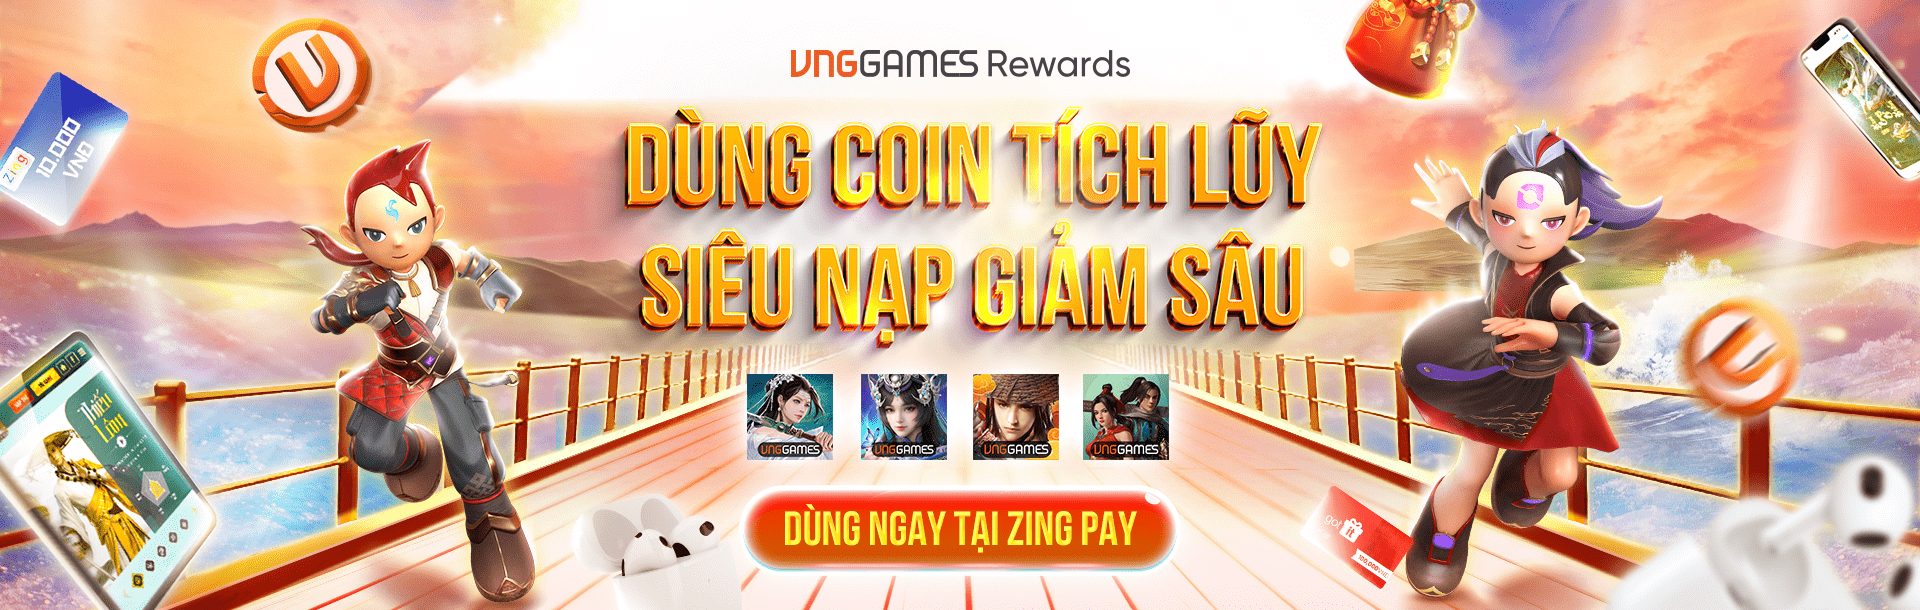 VNGGames Rewards ra mắt: Game thủ các tựa game Võ Lâm Truyền Kỳ, Kiếm Thế Origin trải nghiệm đầu tiên